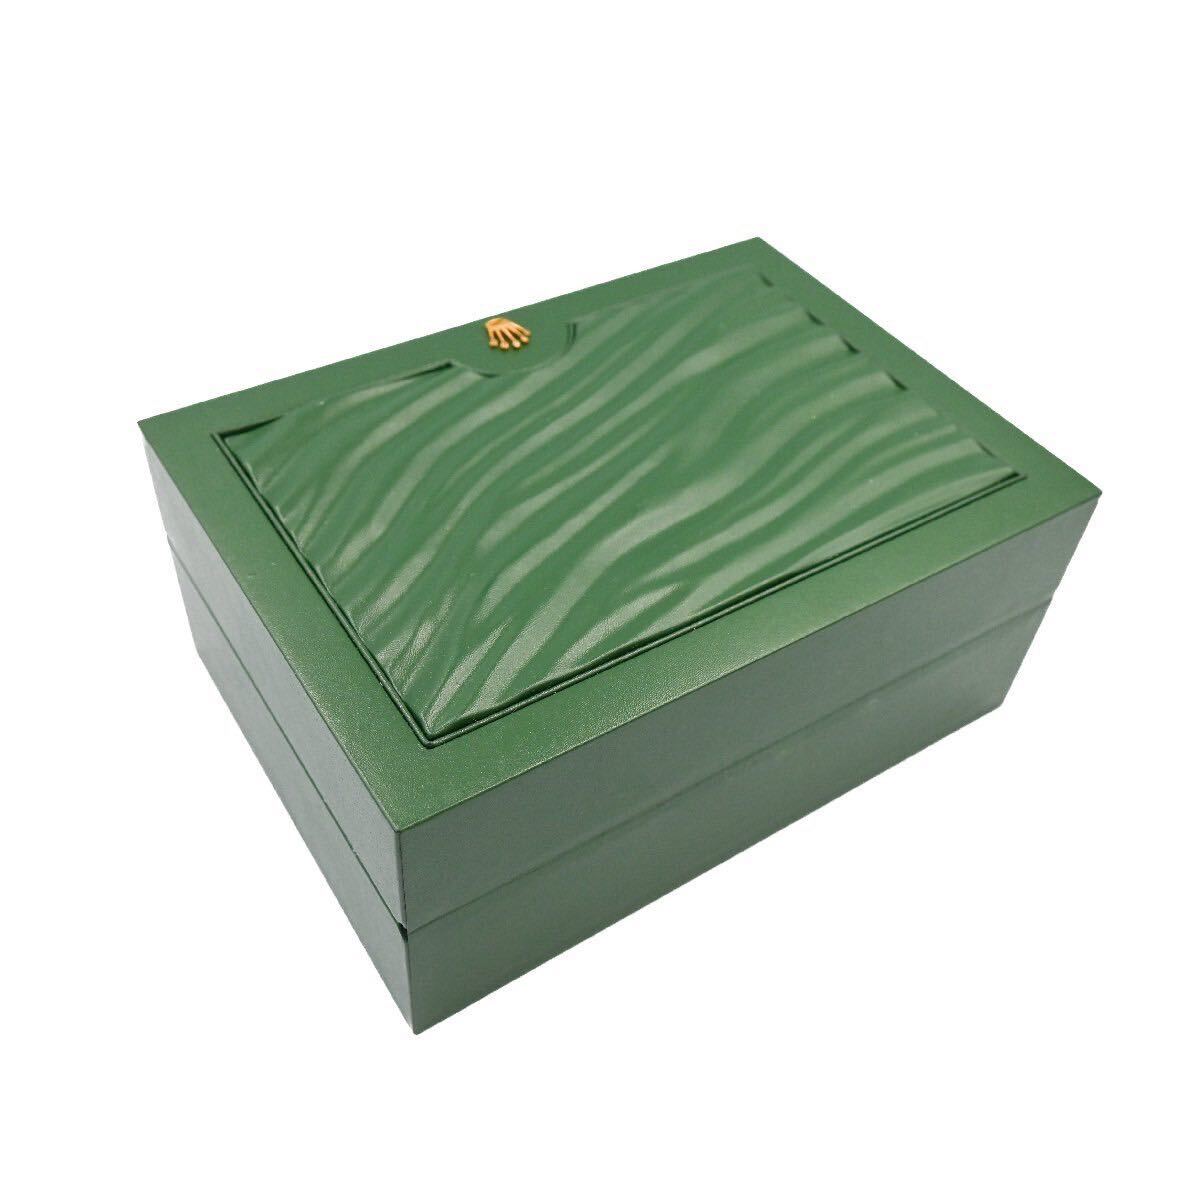 【美品】ROLEX ロレックスケース ROLEX CASE 時計用 空箱 BOX 内箱 M 外箱 31.00.64 緑 モスグリーン